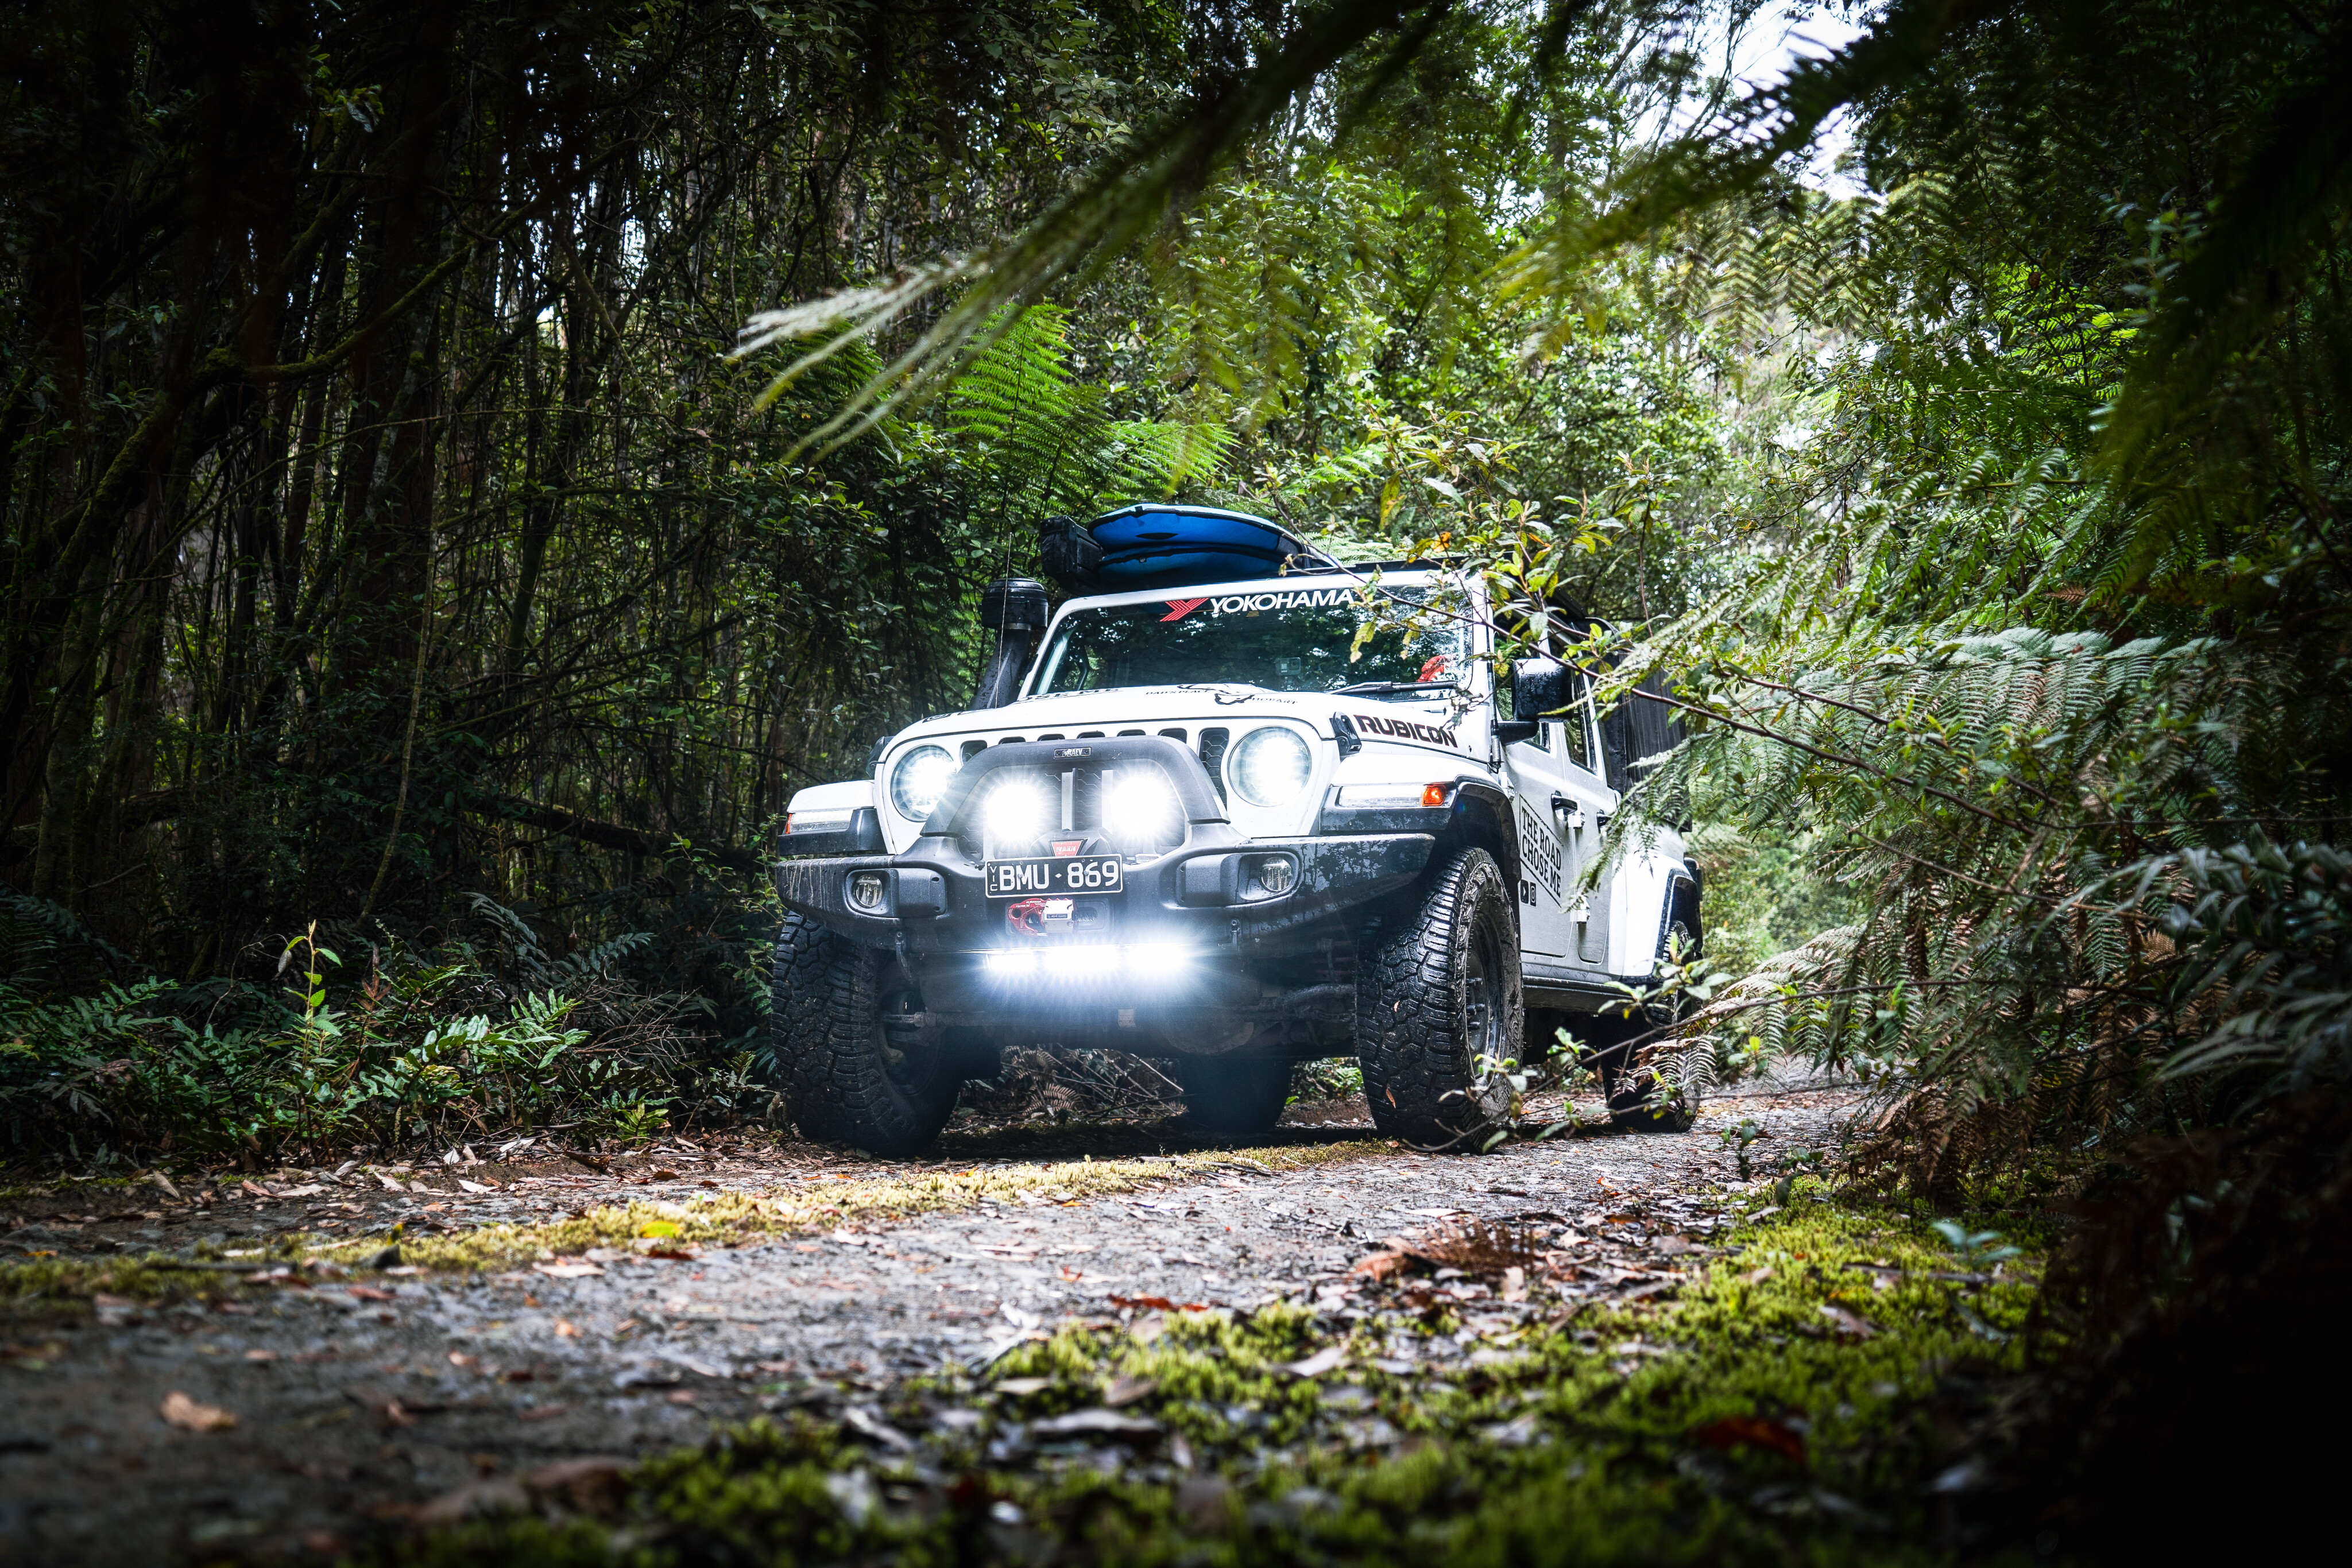 8af01881/forest jeep 4x4 australia explore tasmania jpg